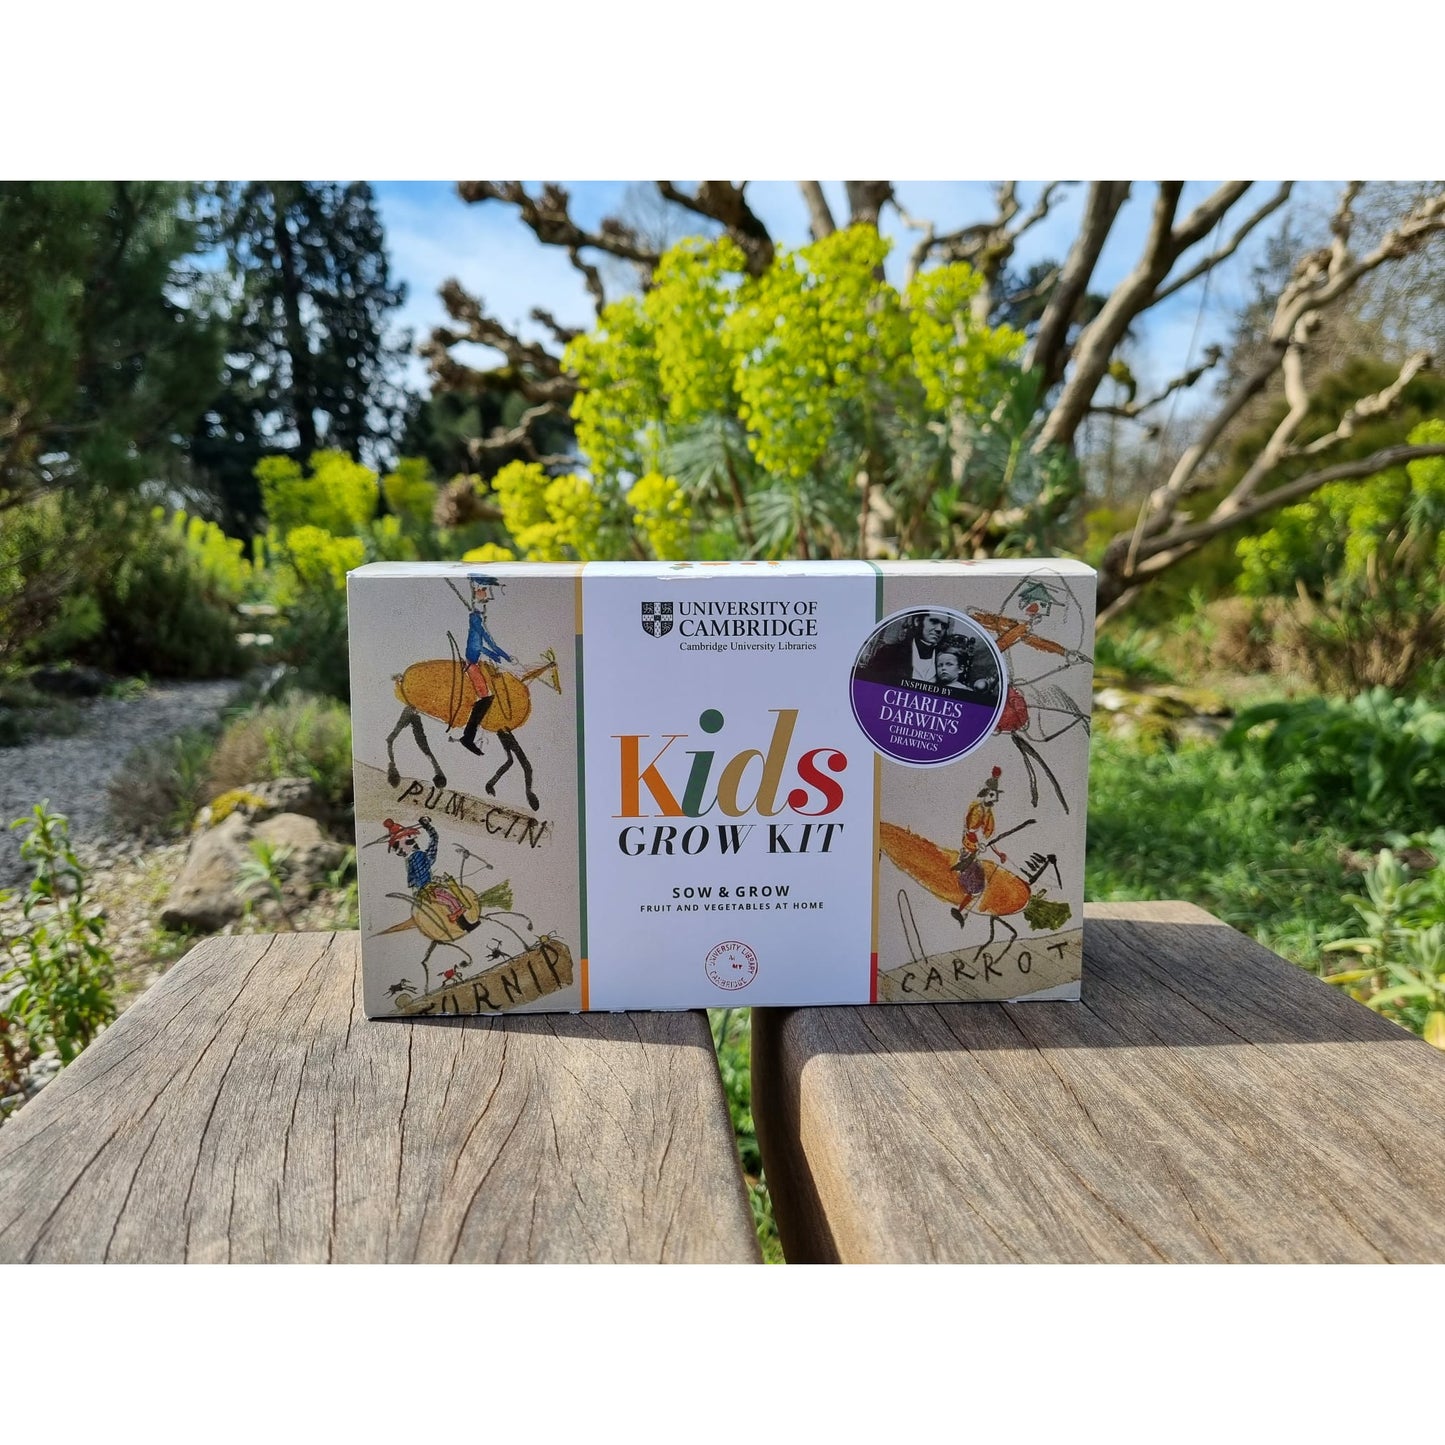 Darwin's Children - Seed growing kit